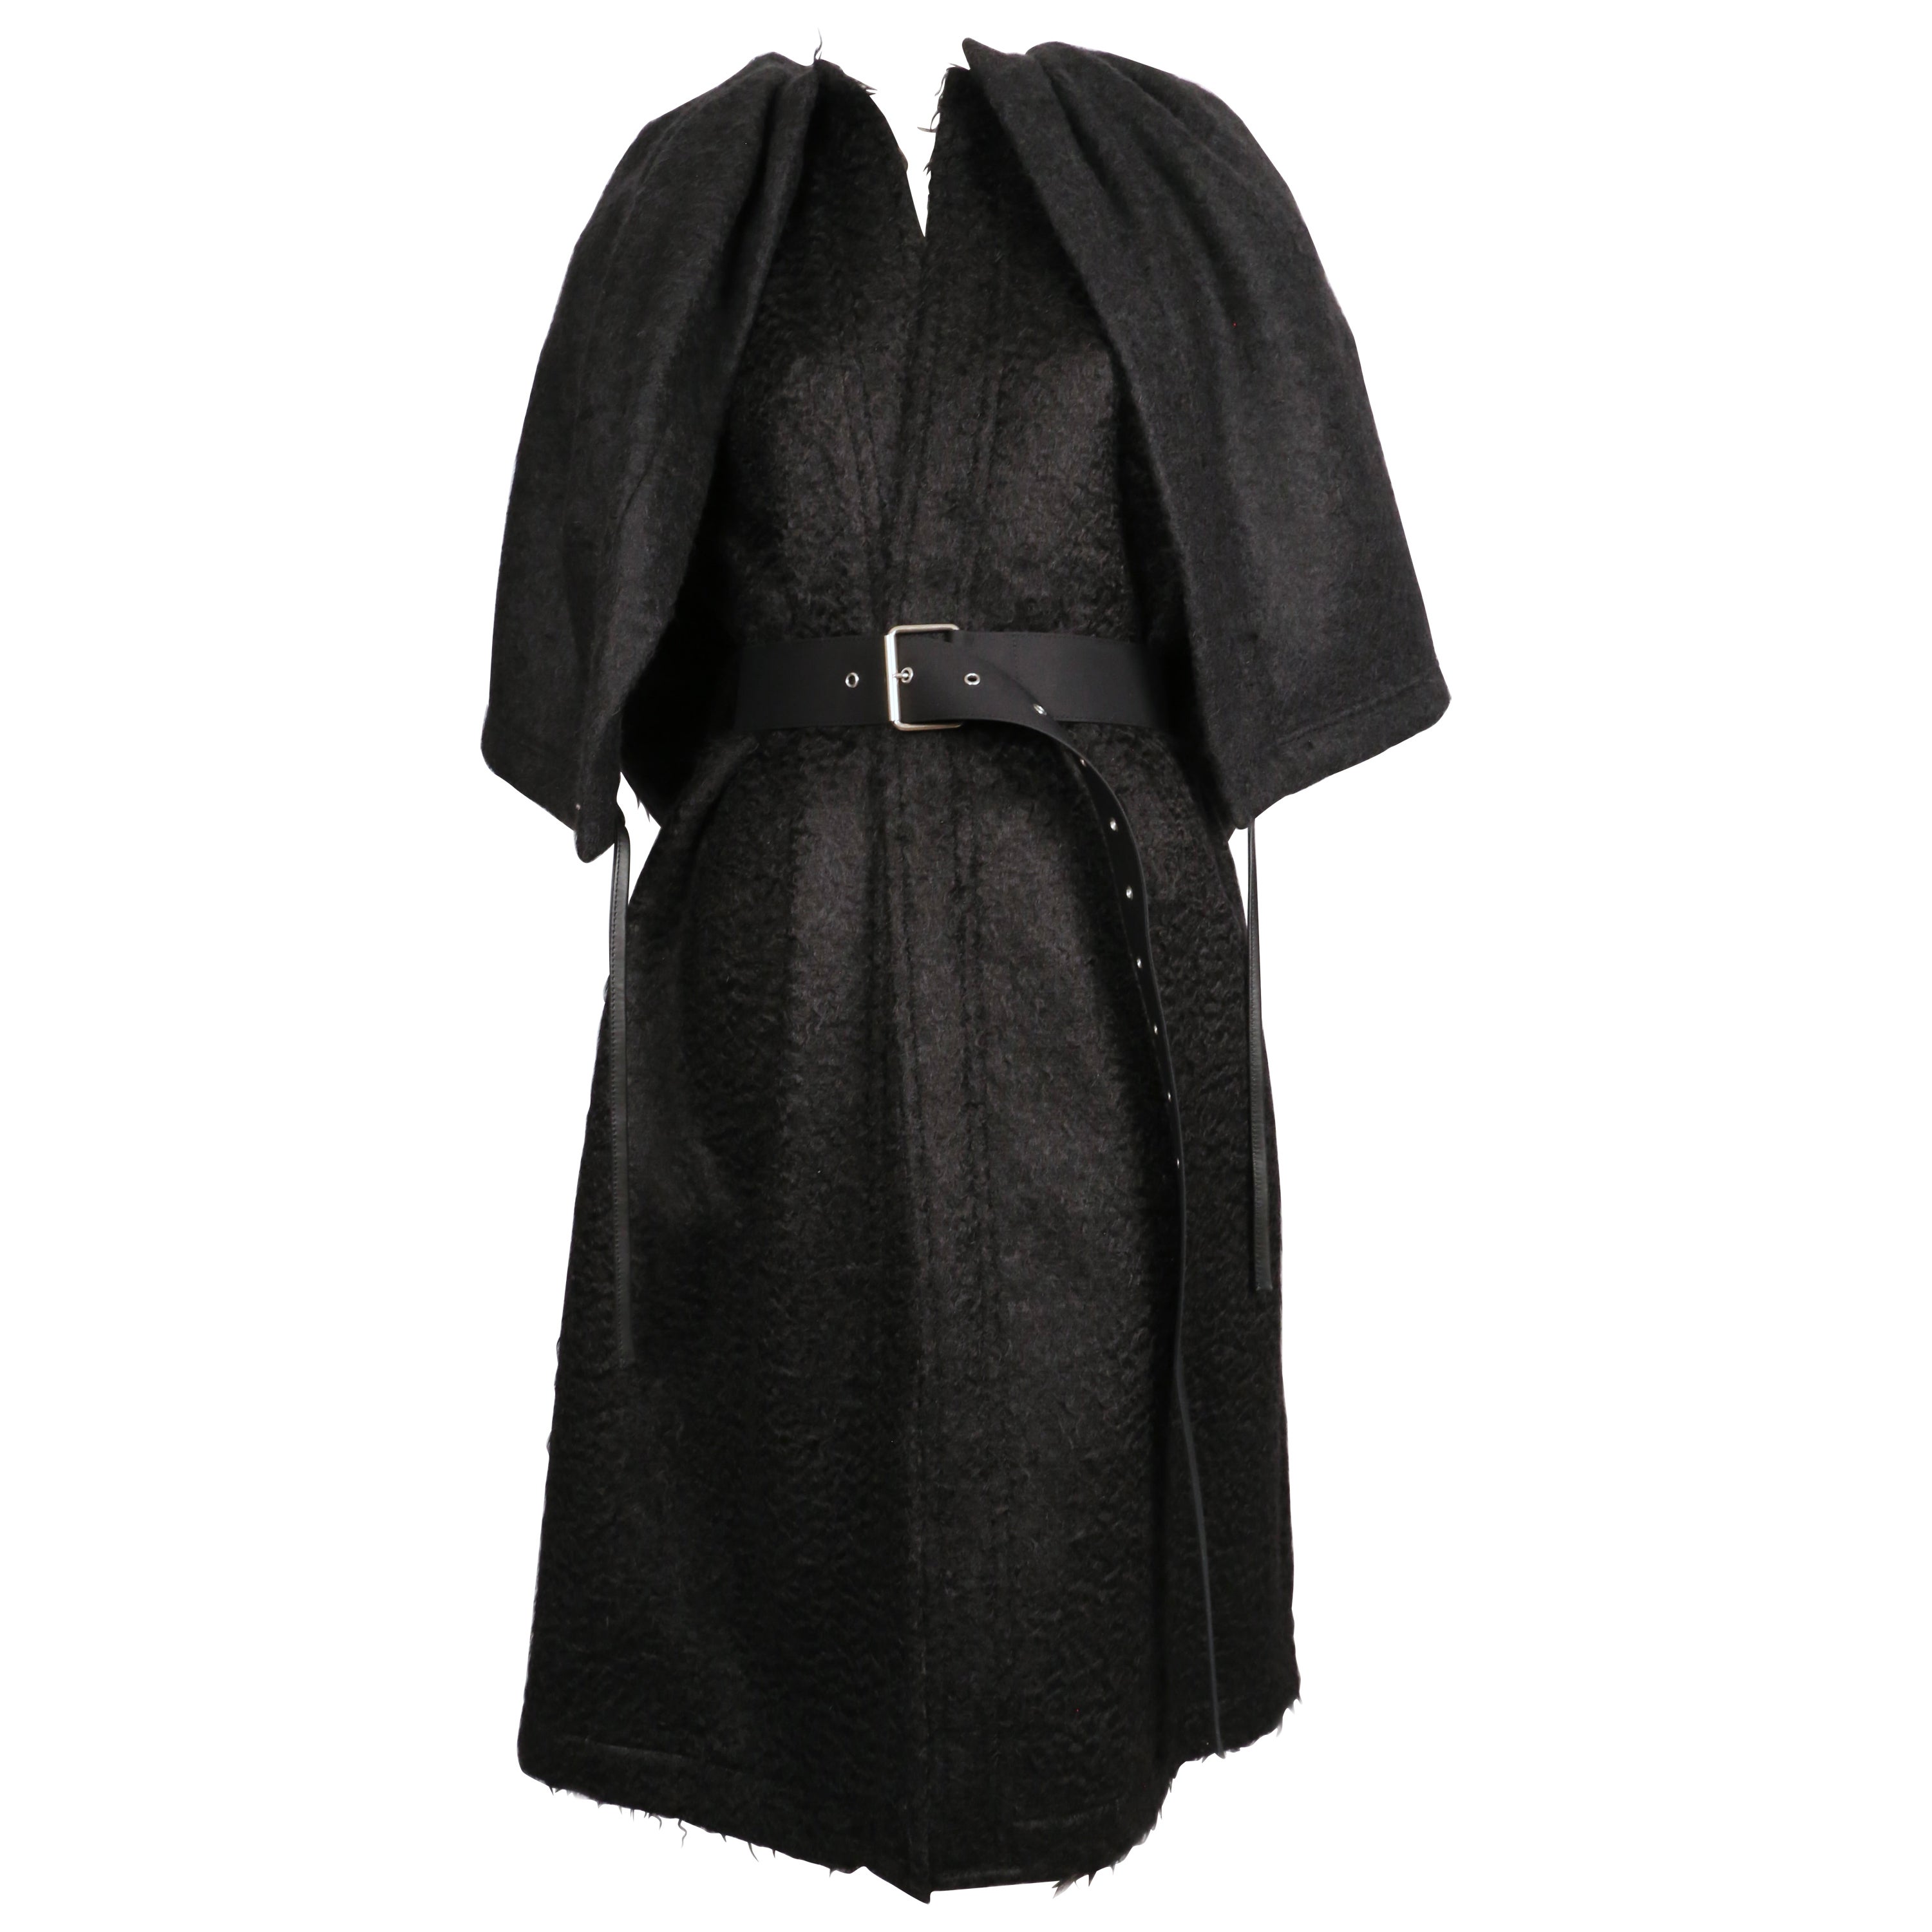 CÉLINE by PHOEBE PHILO manteau de défilé 2016 en laine mohair noire avec cape attachée en vente